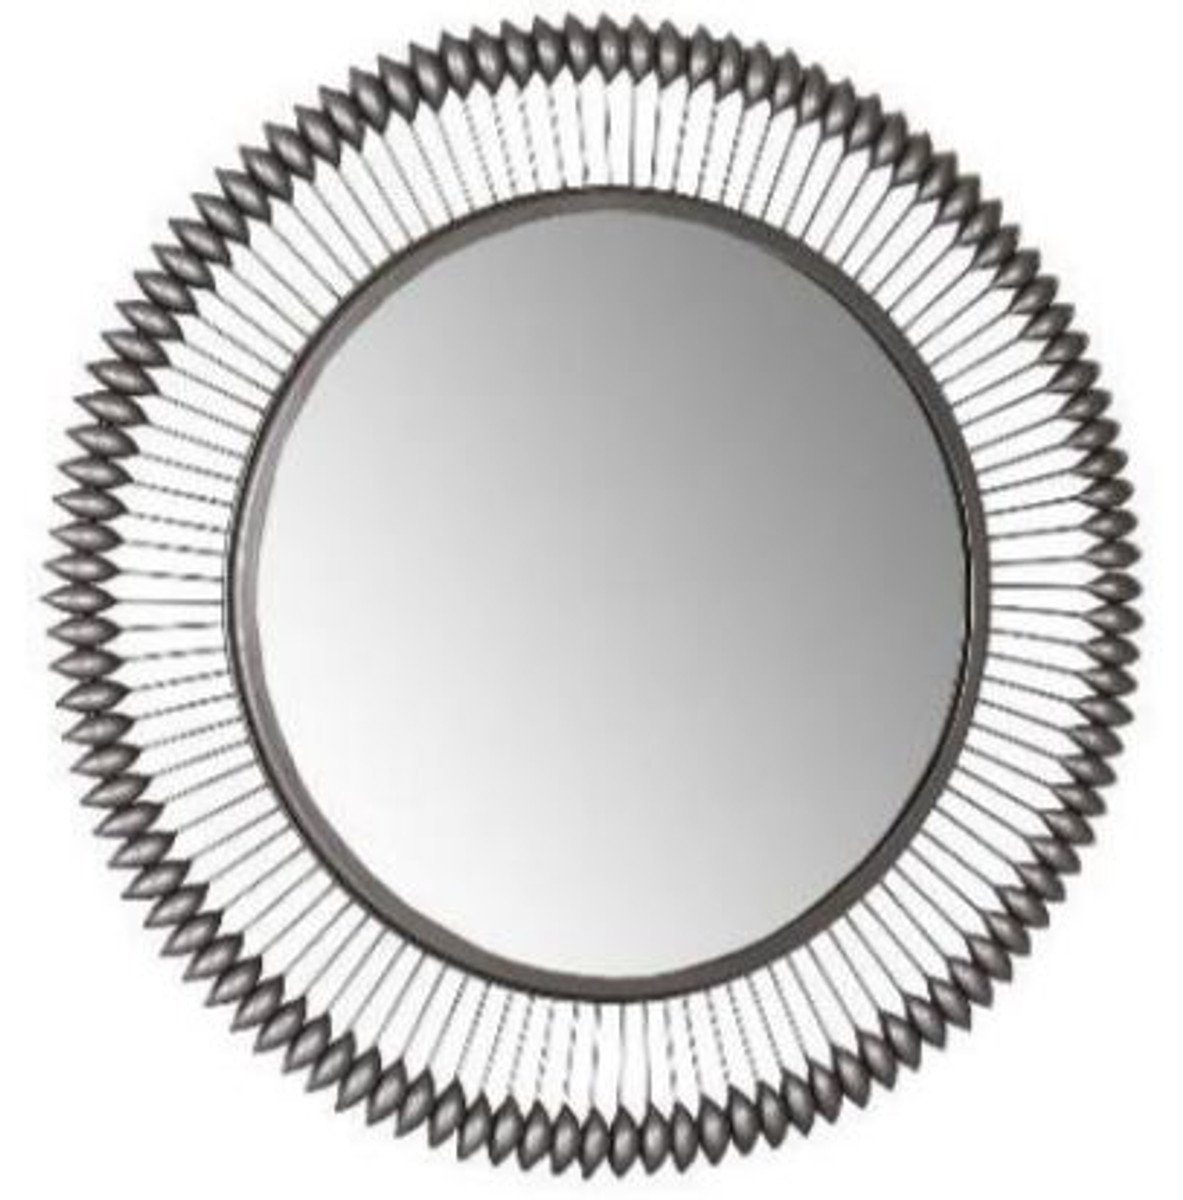 Casa Padrino Spiegel Designer Spiegel Zinkfarben Ø 90 cm - Moderner pulverbeschichteter Metall Wandspiegel - Luxus Deko Accessoires